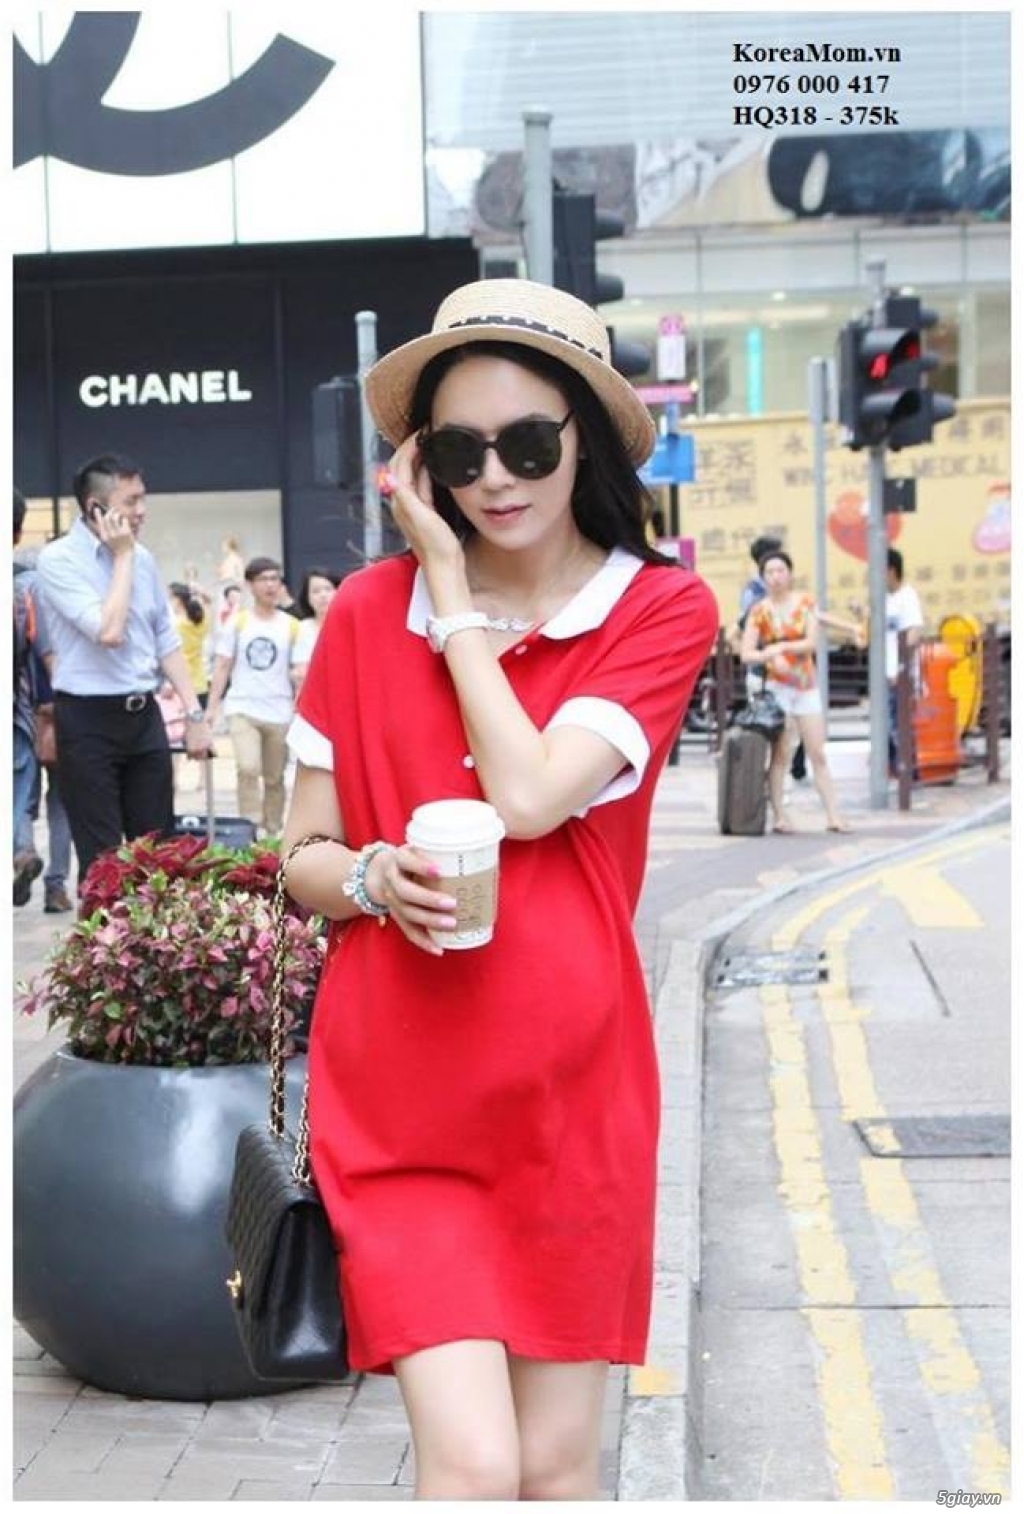 Đầm Bầu KOREA MOM chuyên sỉ và lẻ thời trang bầu Hàn Quốc với giá tốt nhất, thời trang sành điệu - 42